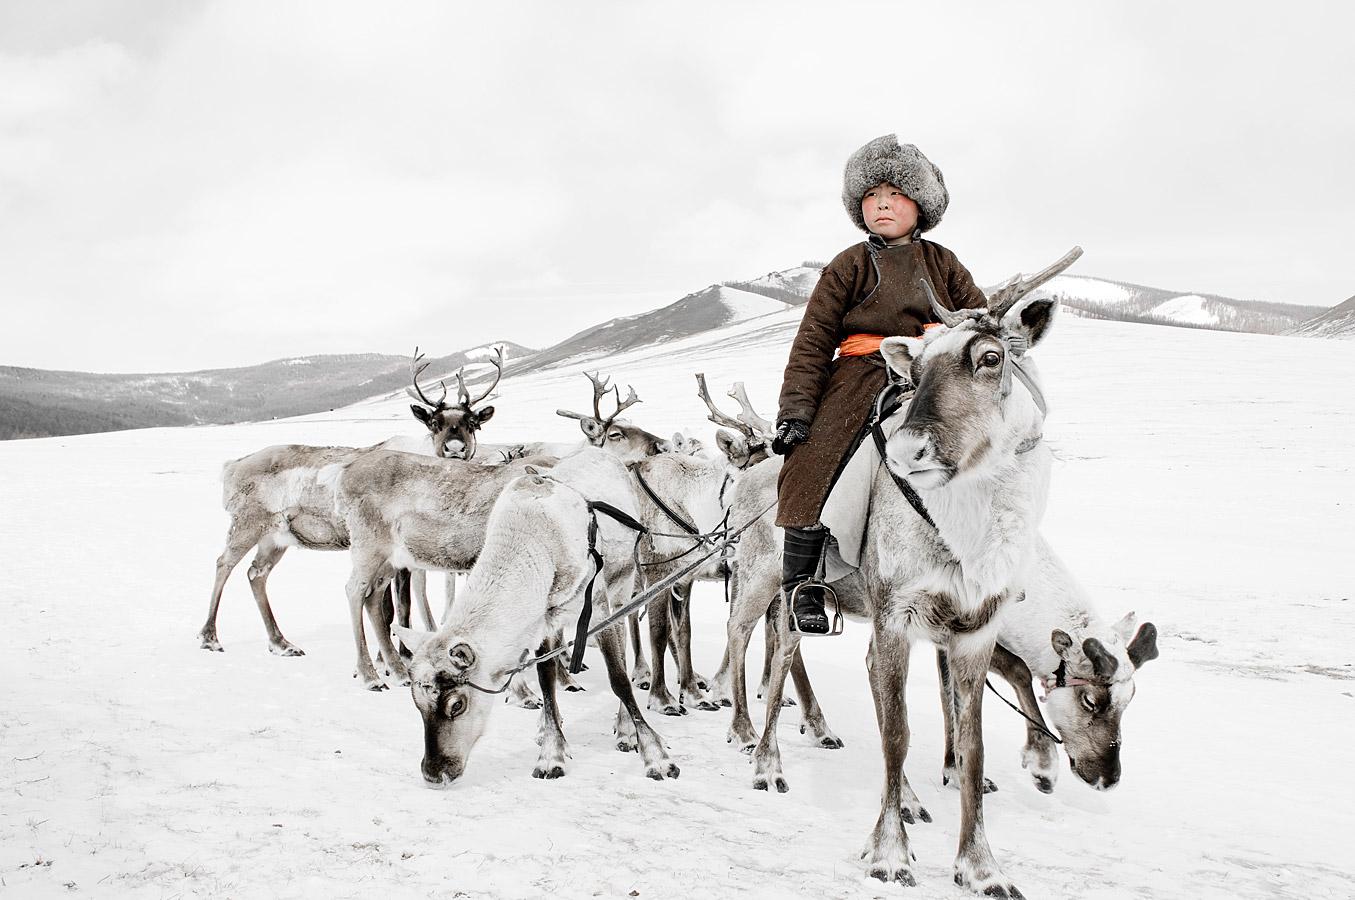 "XX 204 - Bayau Bulang - Renchinkhumbe, Khovsgol - Mongolie, 2011


Les Tsaatan (en mongol, "ceux qui ont des rennes") descendent d'éleveurs de rennes qui habitent la taïga subarctique la plus reculée depuis des milliers d'années, se déplaçant entre